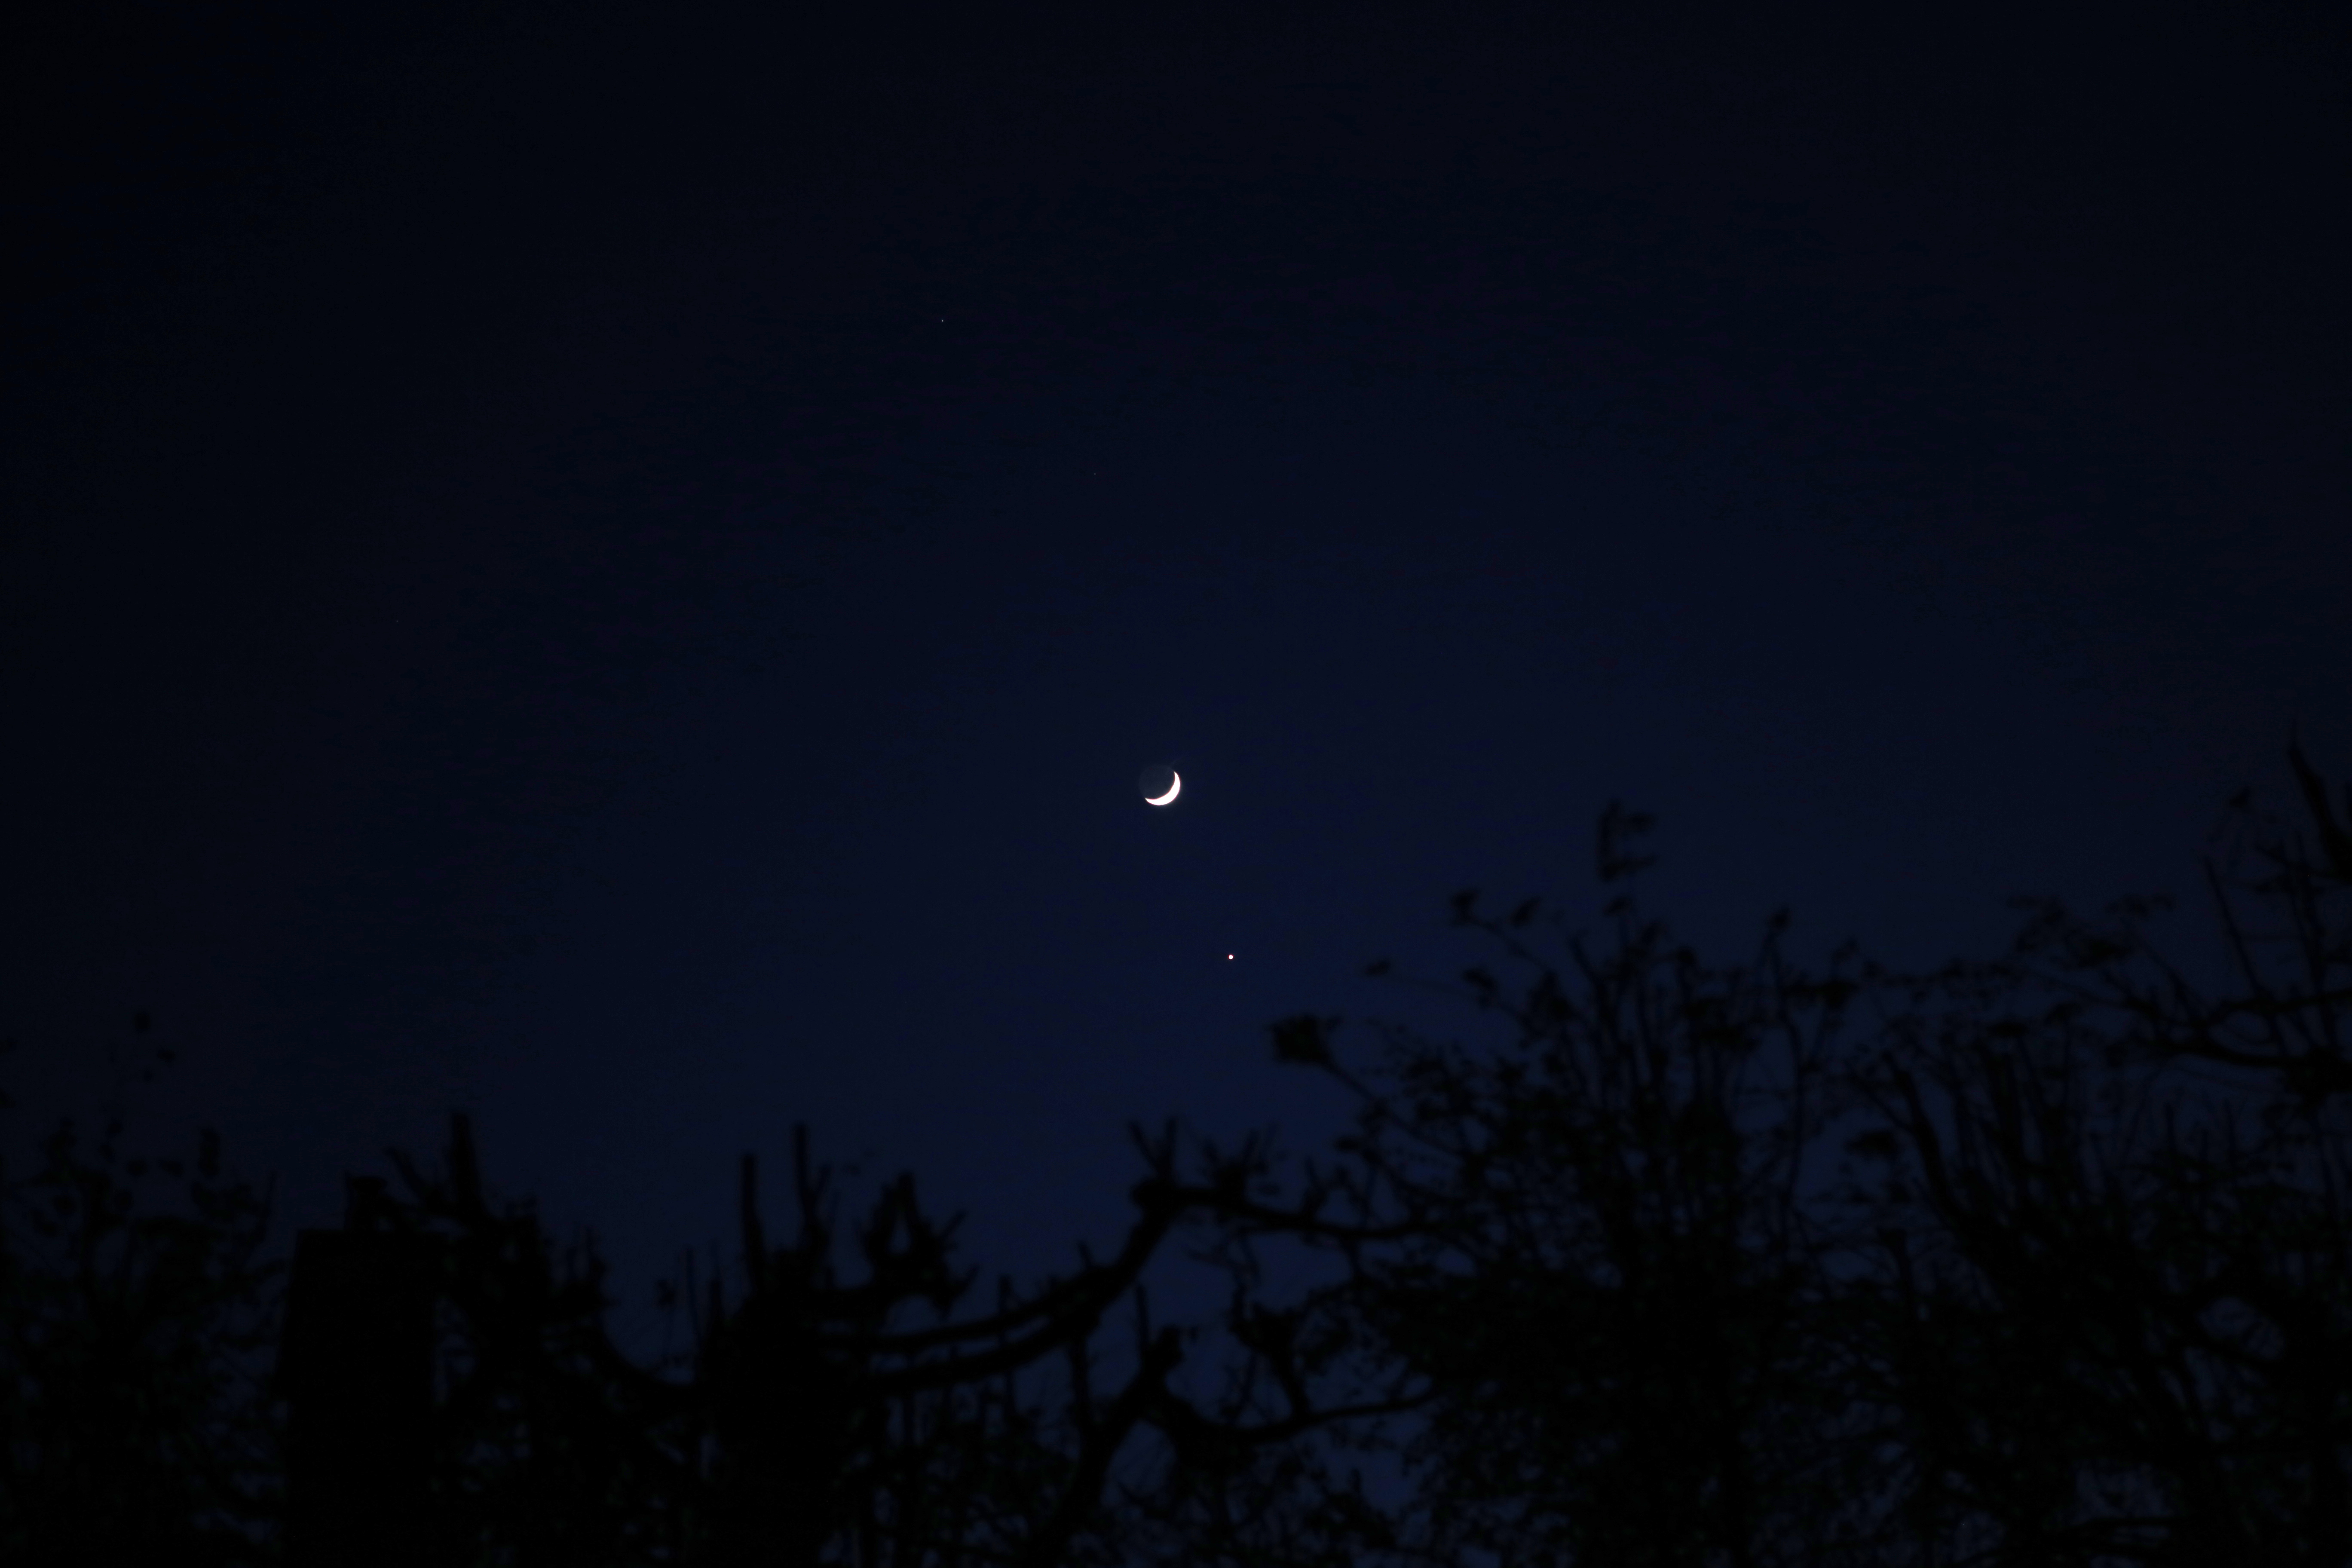 Księżyc + Wenus, 6D, 24-70@70, F/2.8, 1/80s (-3EV)